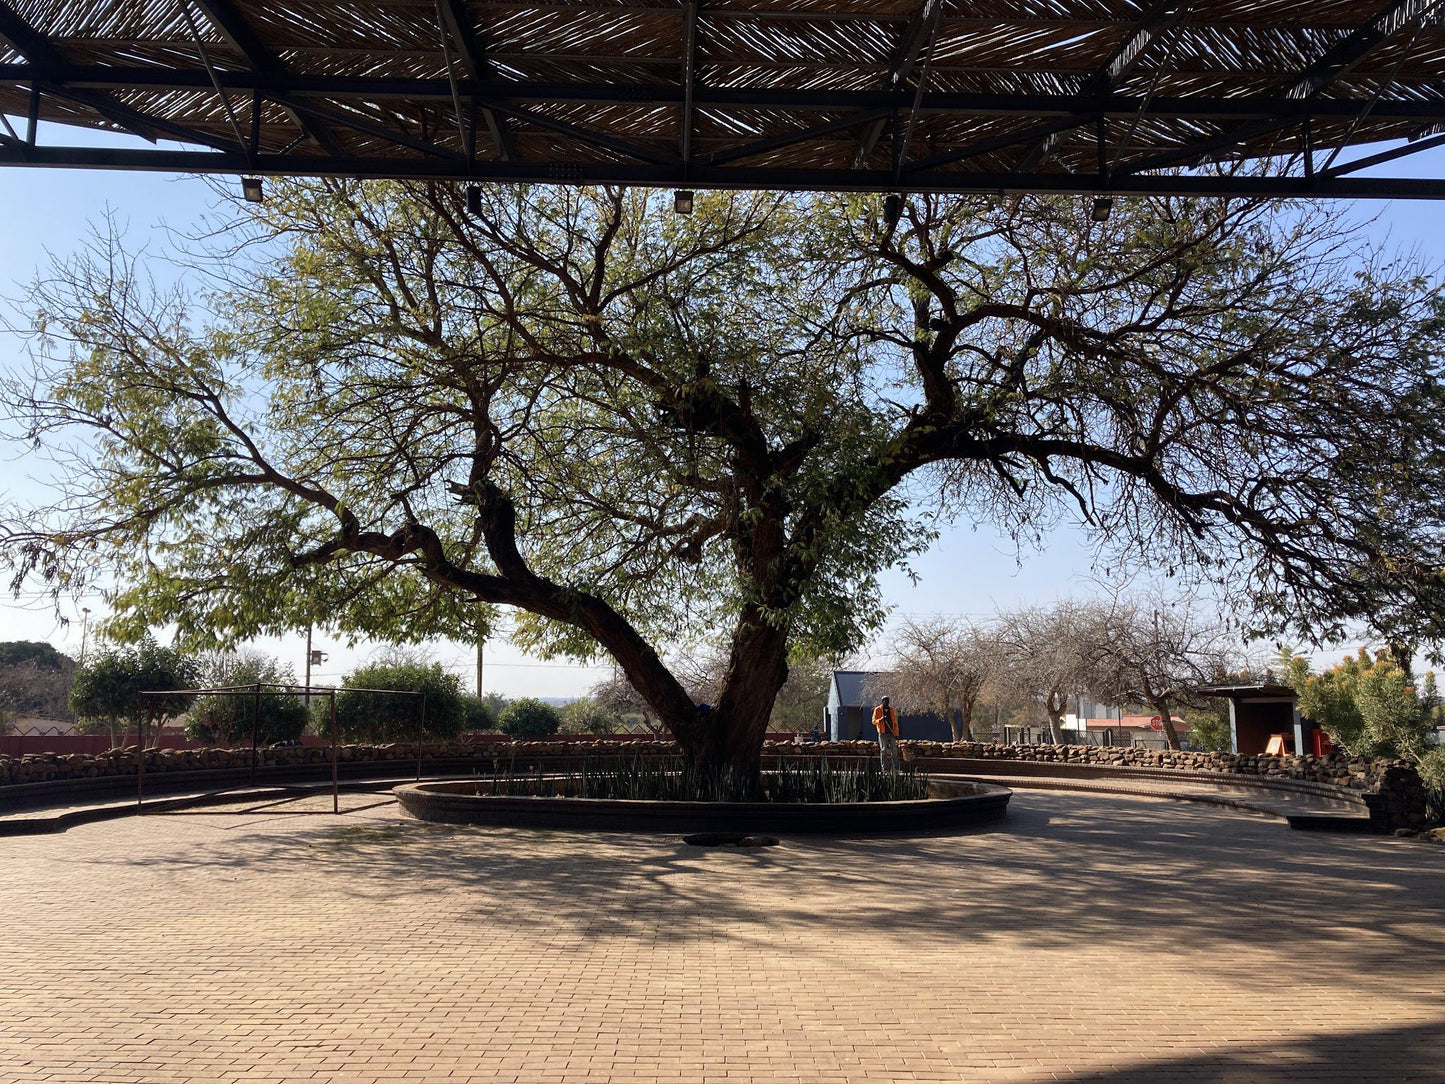  Mphebatho Cultural Museum & Moruleng Cultural Precinct